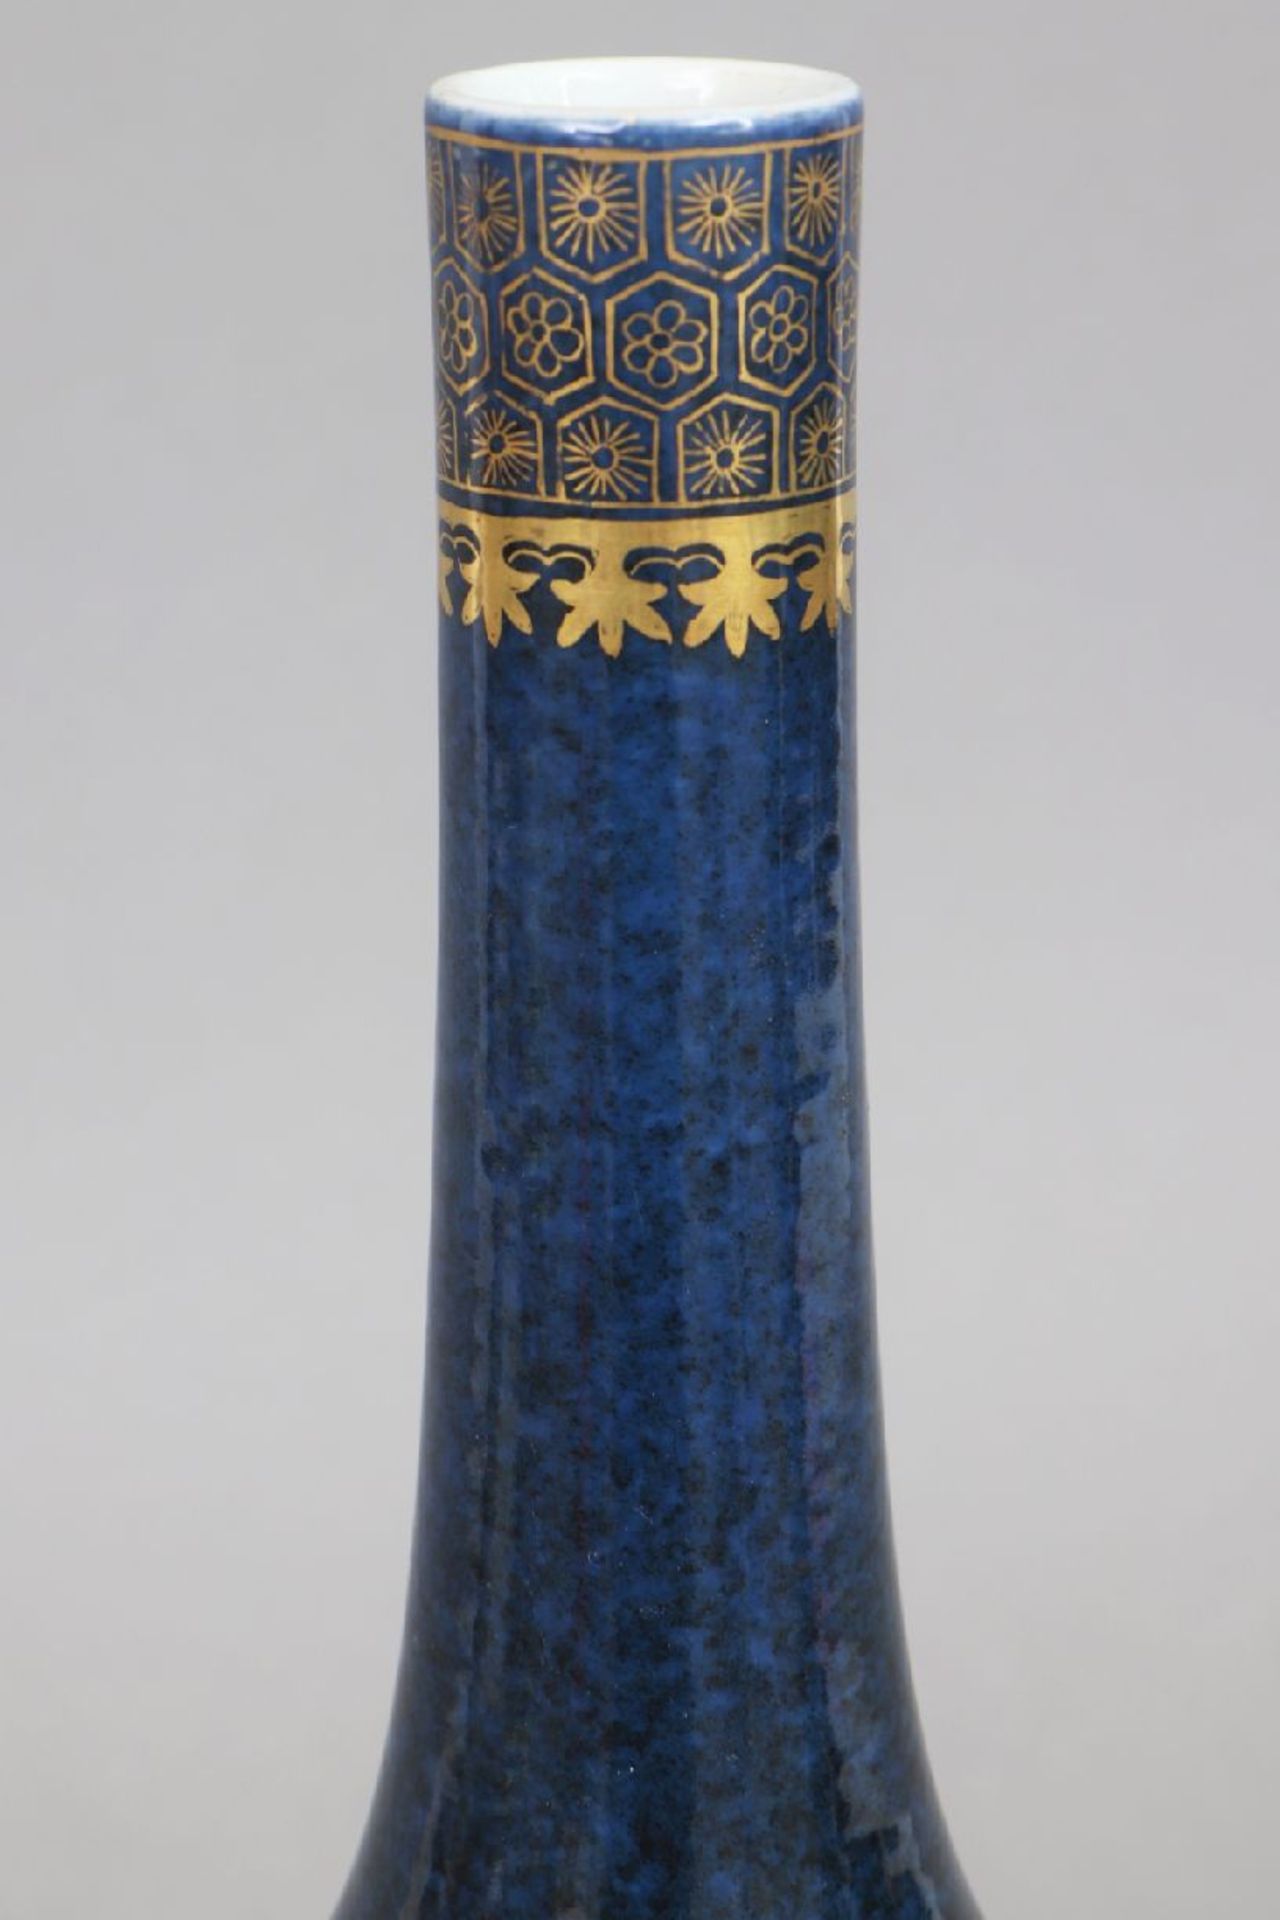 Chinesische Porzellanvase mit powder-blue Glasur und Goldmalereibauchiger Korpus mit schlankem, - Bild 3 aus 5